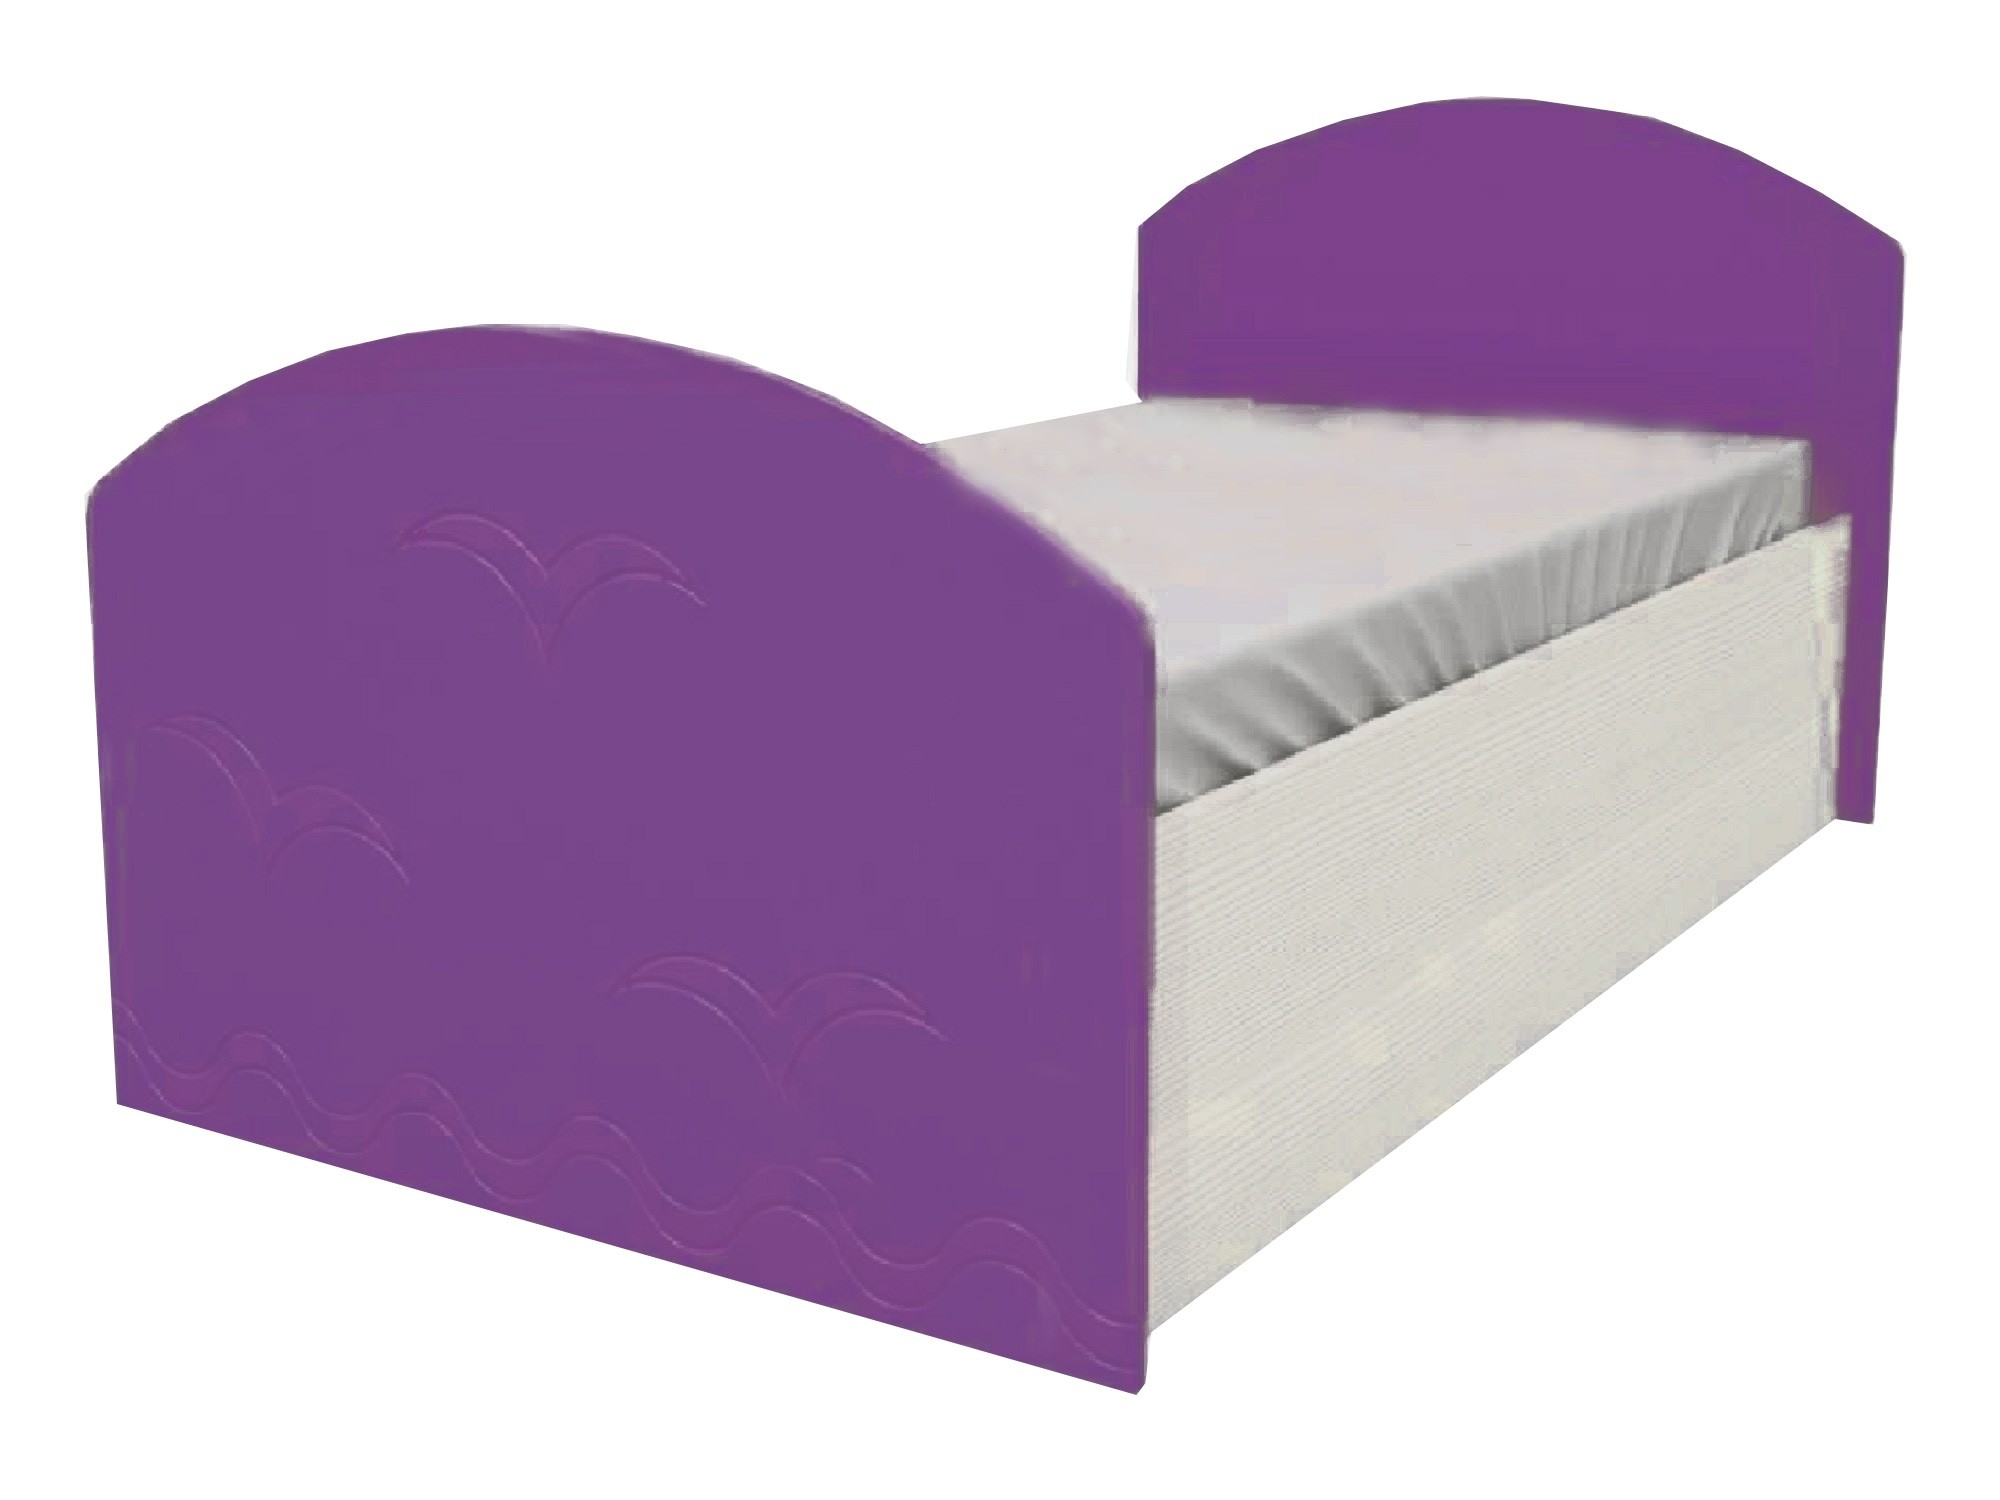 Юниор-2 Детская кровать 80, металлик (Фиолетовый металлик, Дуб белёный) Дуб белёный, МДФ, ЛДСП юниор 2 детская кровать 80 металлик розовый металлик дуб белёный дуб белёный мдф лдсп